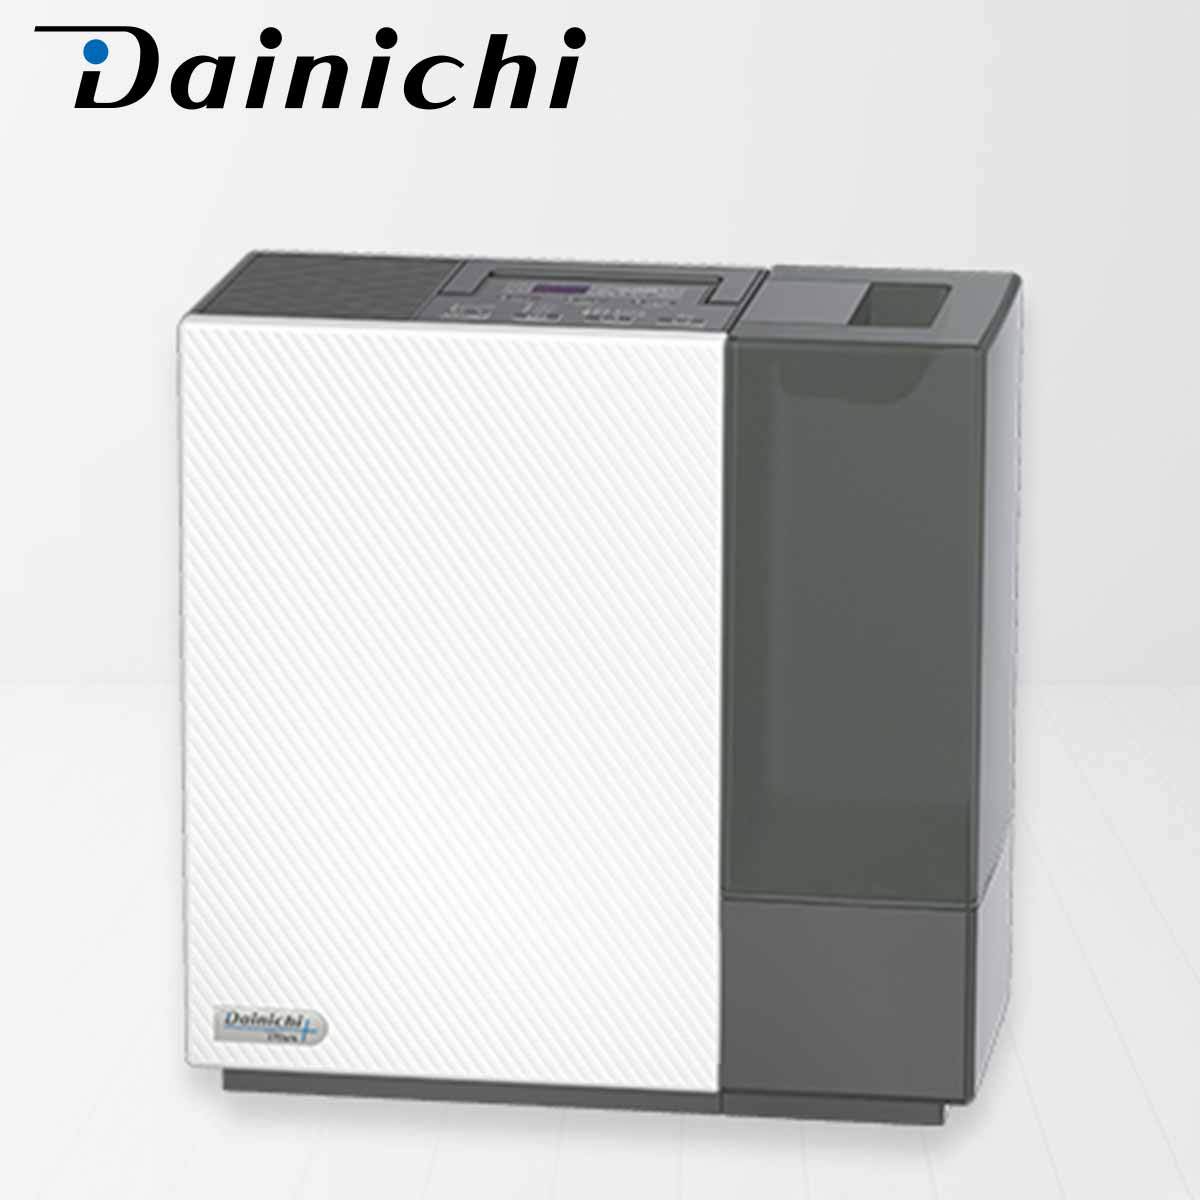 ダイニチ ダイニチ ハイブリッド式加湿器 HD-RX520-WK（ホワイト×ブラック） 加湿器の商品画像